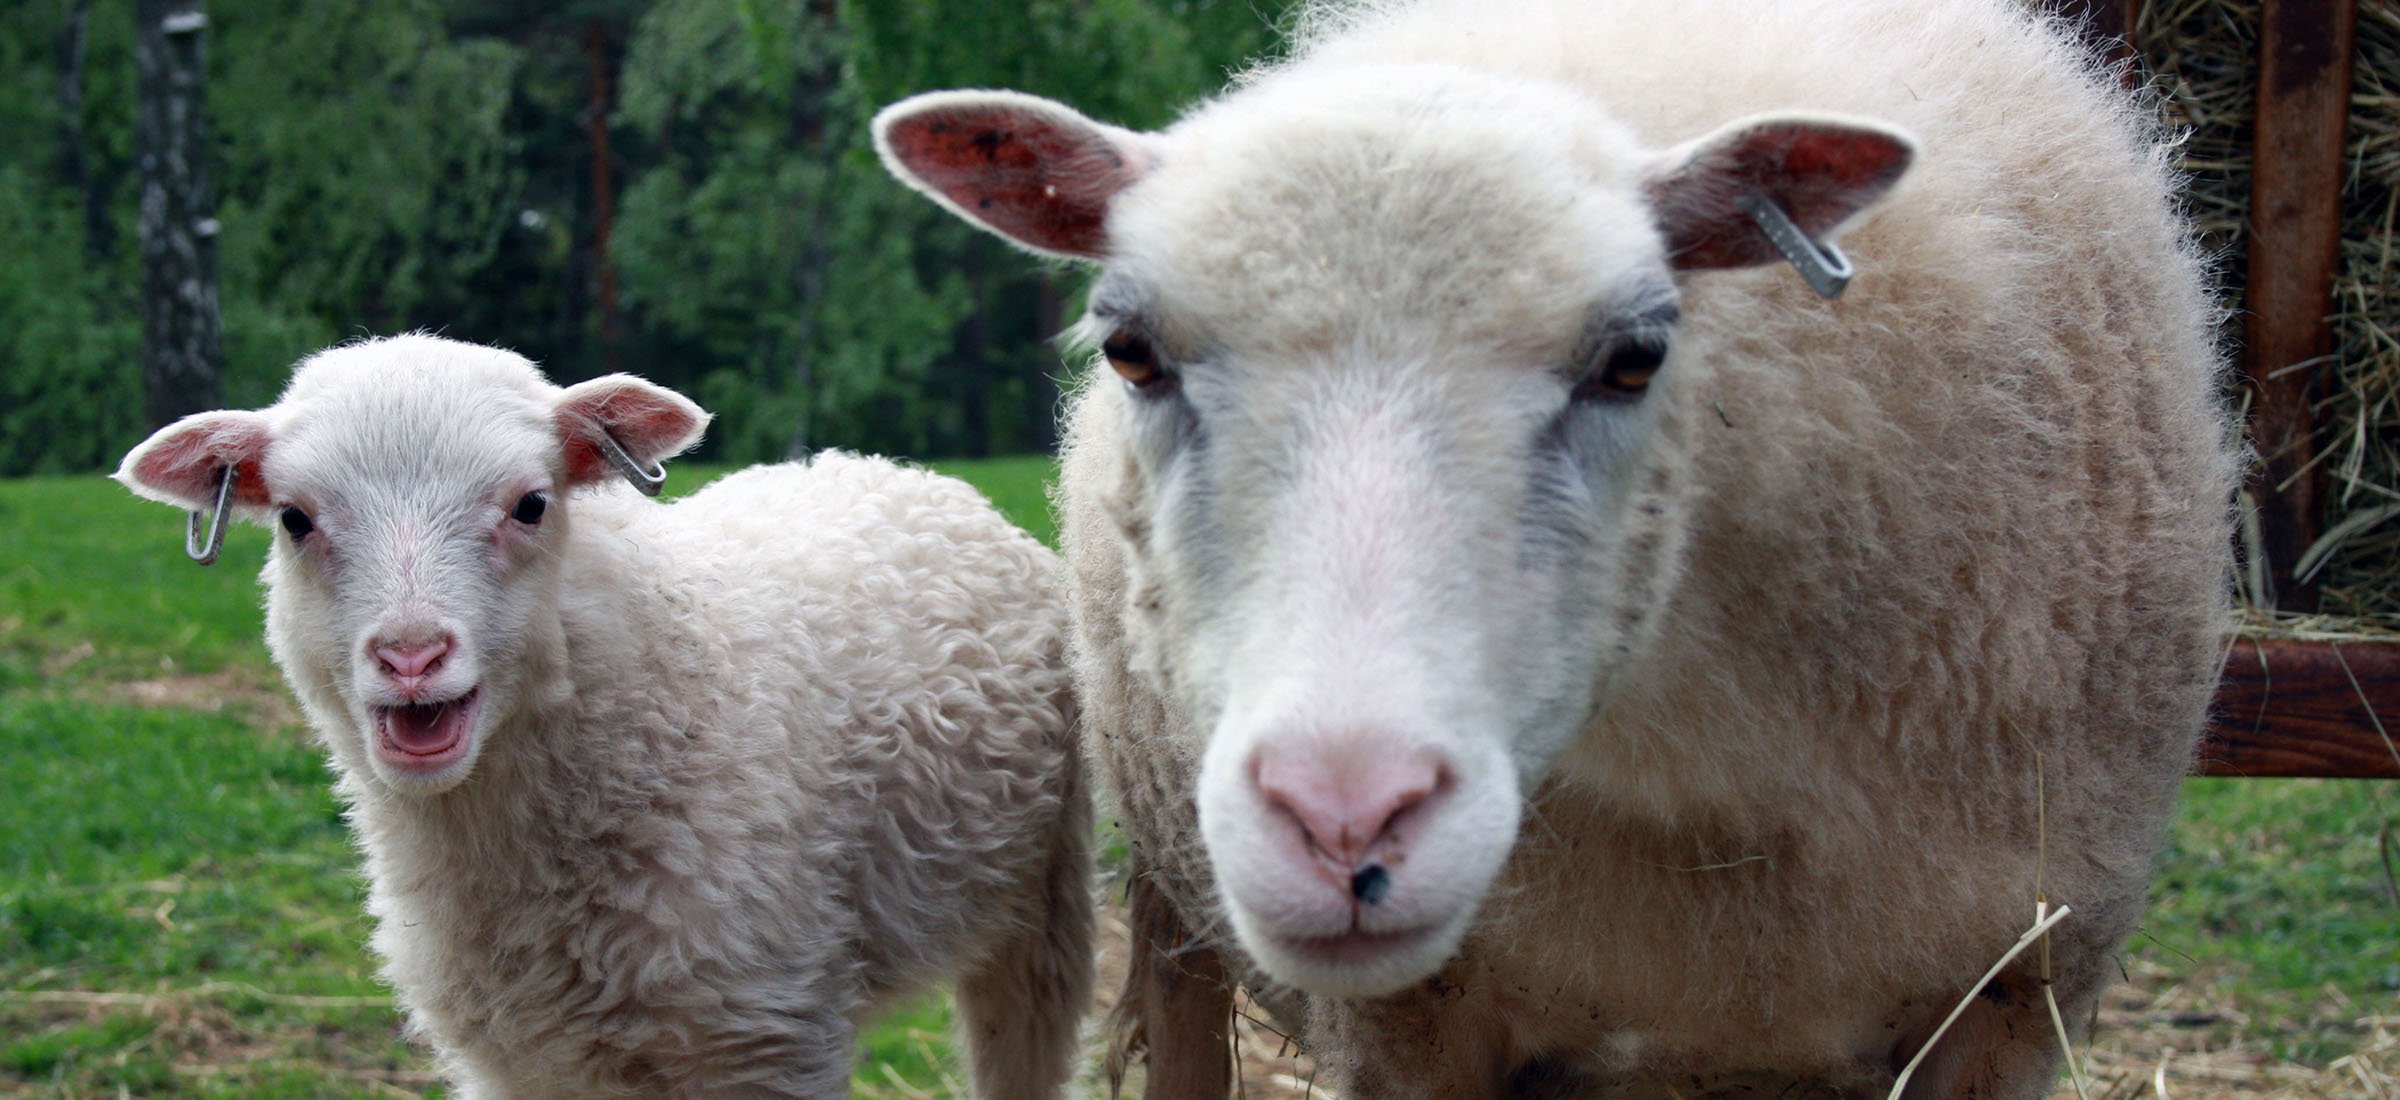 Närbild på ett får med ett lamm brevid